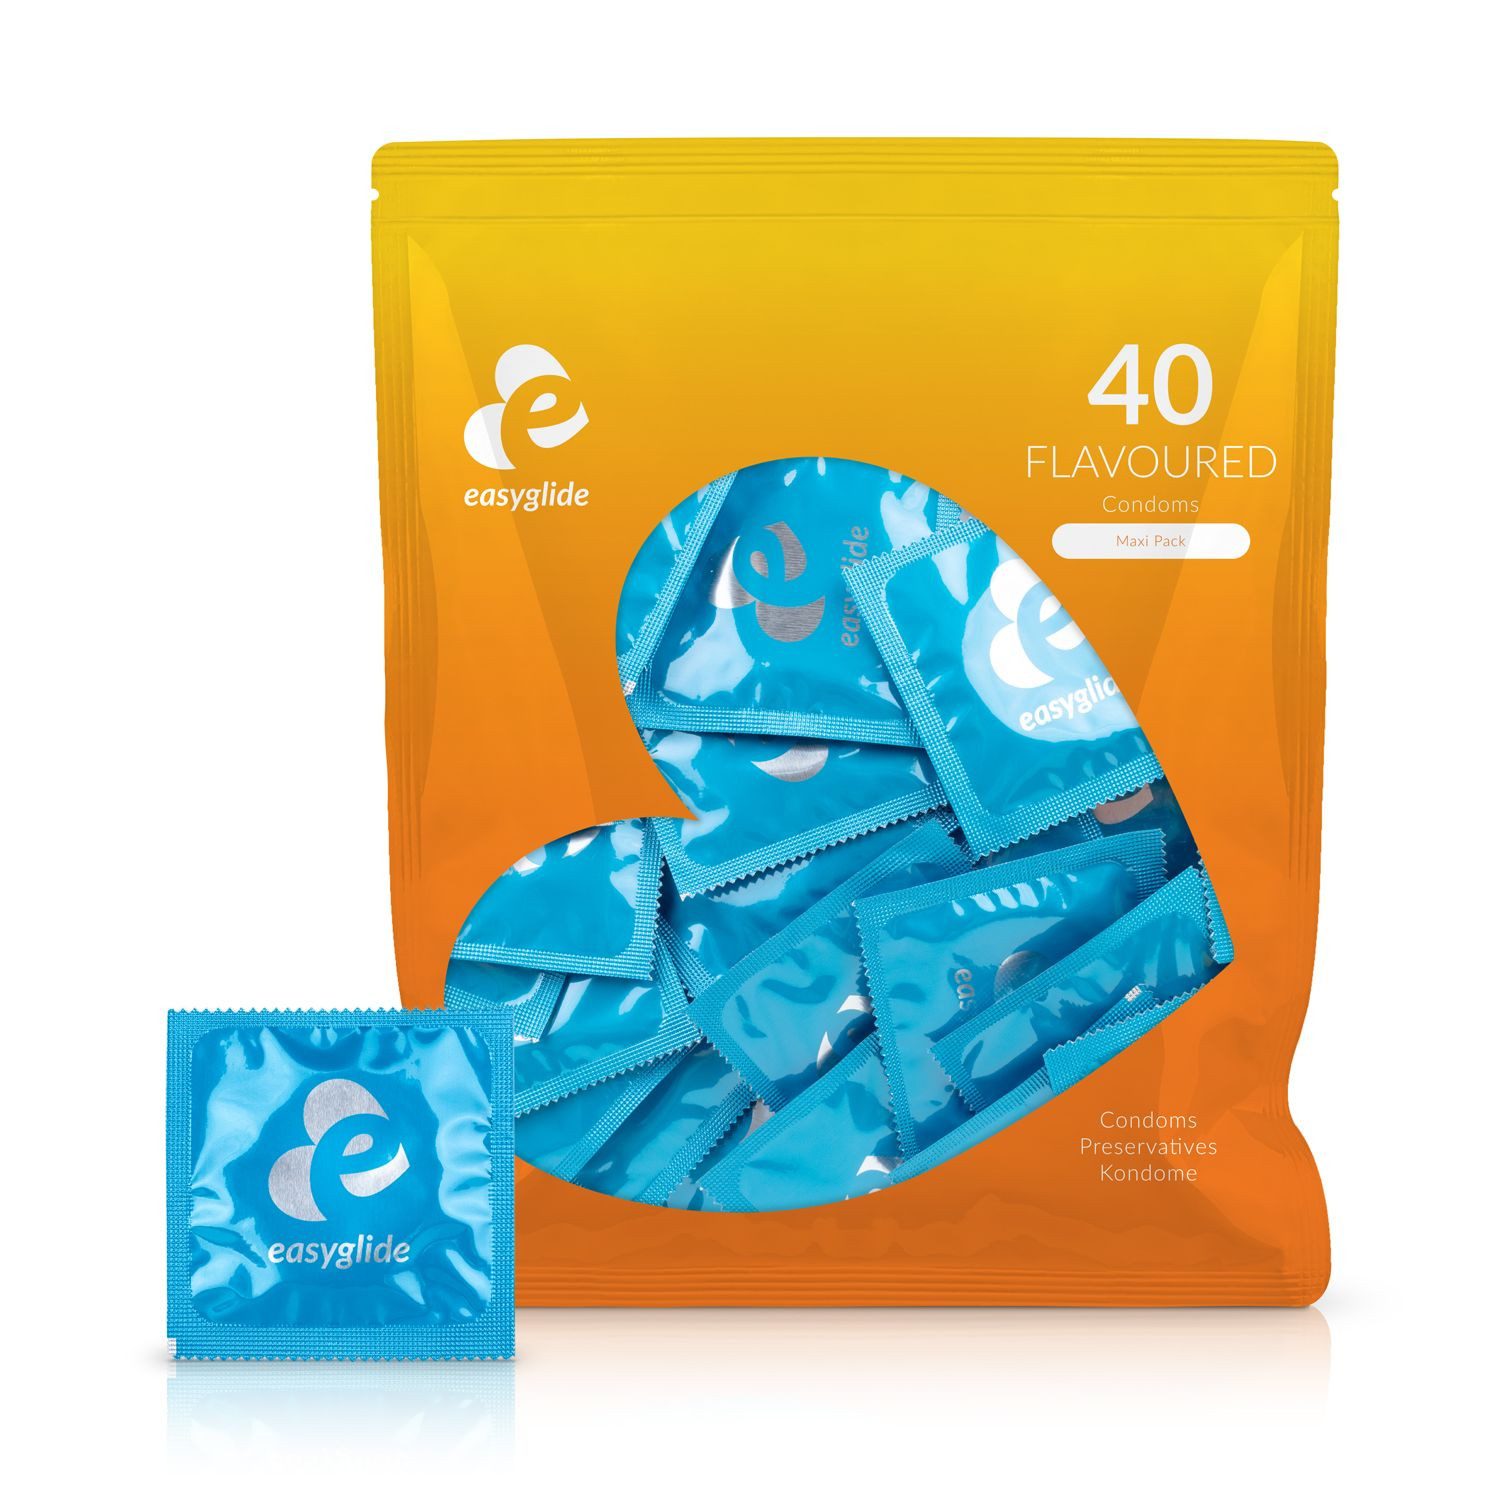 EasyGlide Kondome EasyGlide - Kondome mit Geschmack - 40 Stück, 1 St., mit Geschmack, vielfältige Fruchtaromen, 40 Stk., 54 mm